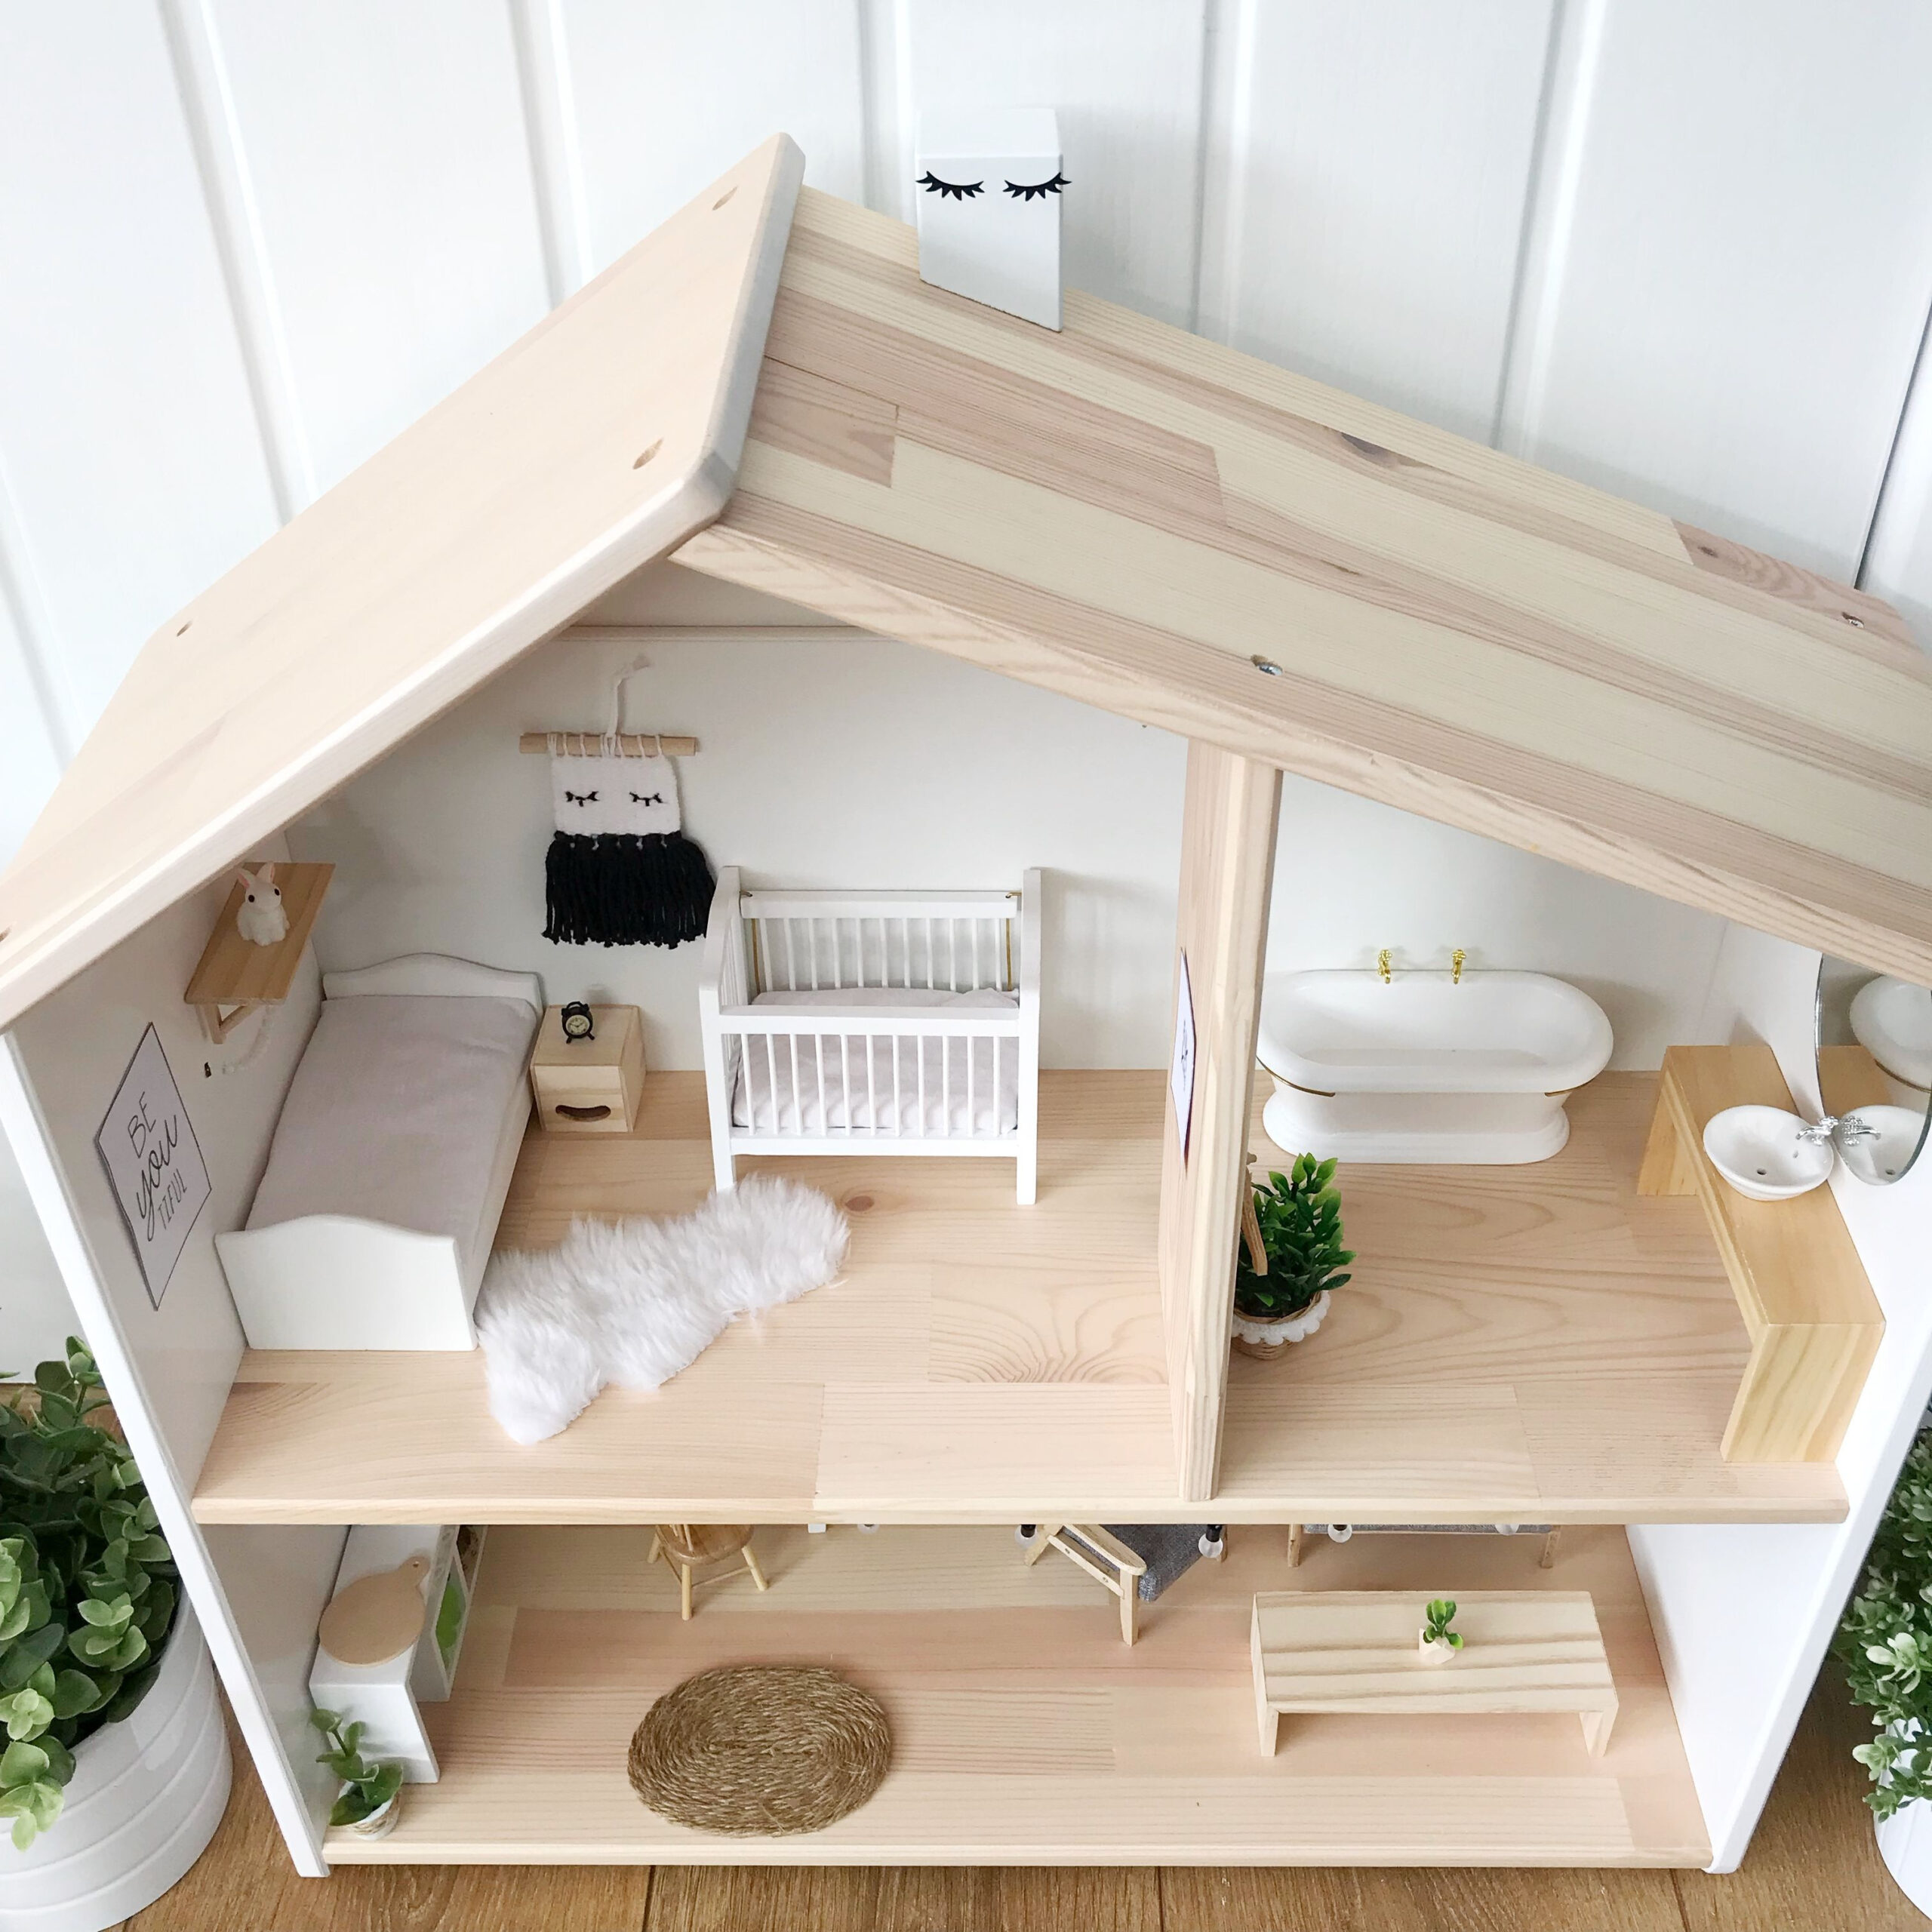  babydolls Modern Dollhouse Furniture Doll House Plans Diy 